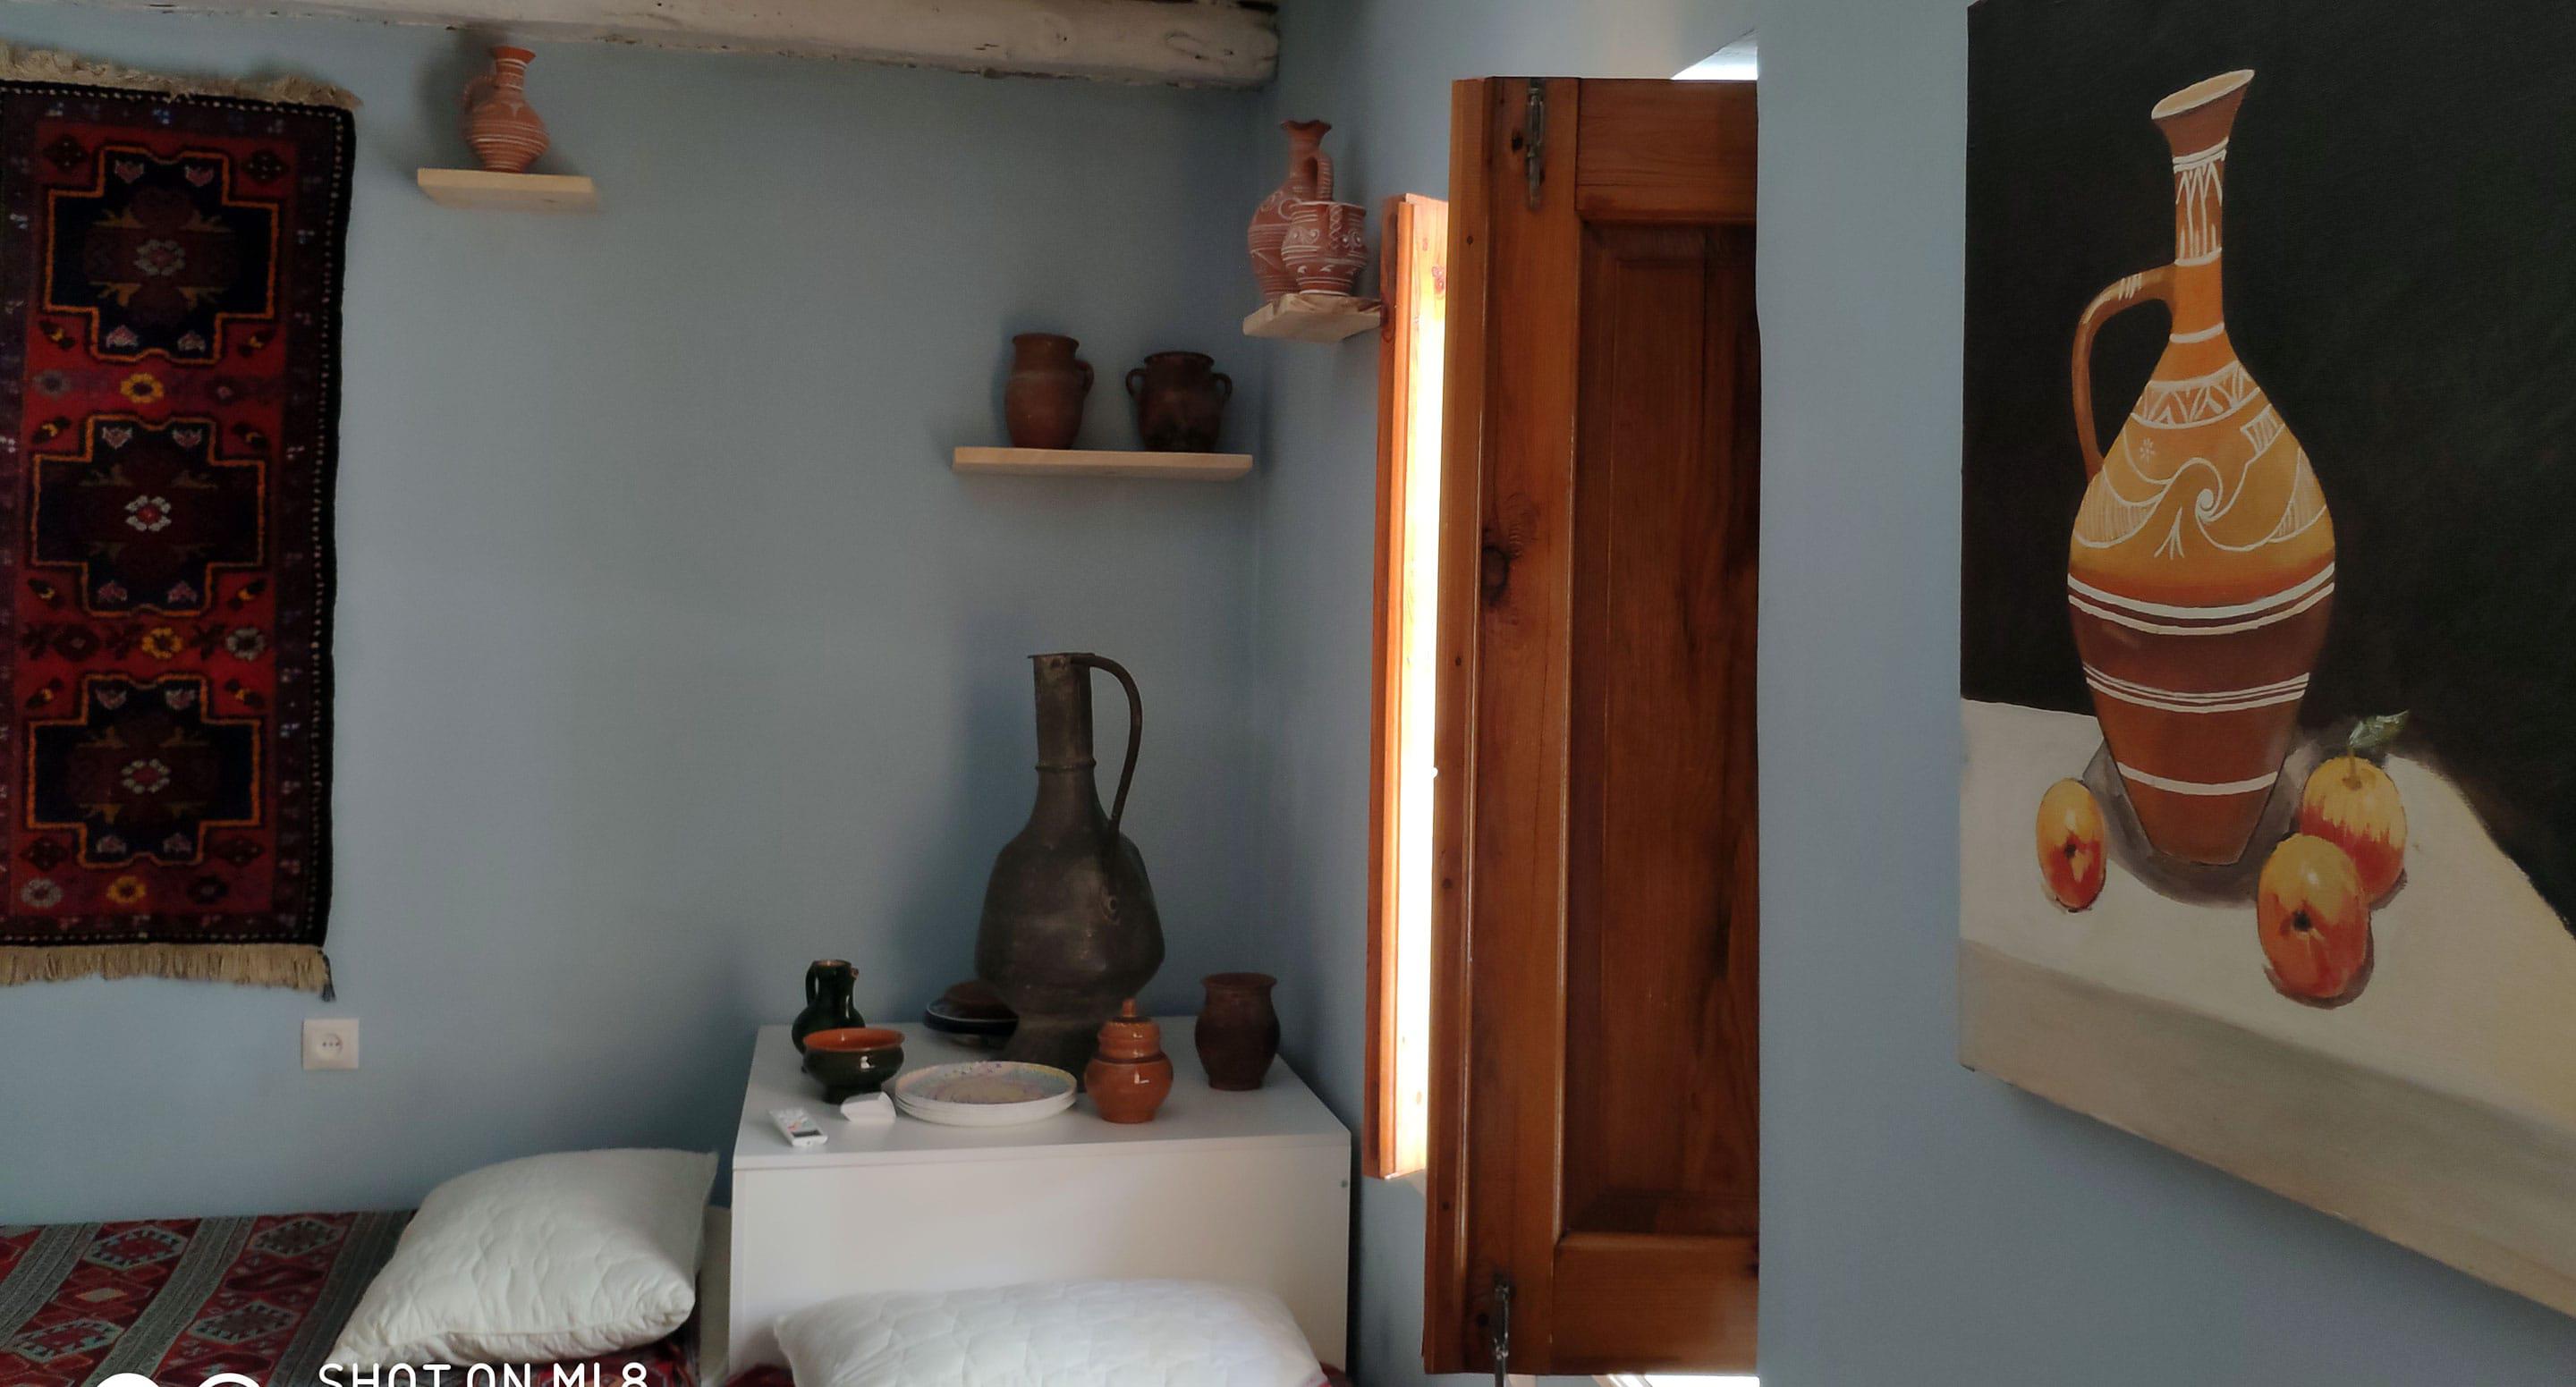 Интерьер "балхарской комнаты" - глиняные кувшины и горшки. Фото Расула Магомедова для "Кавказского узла"